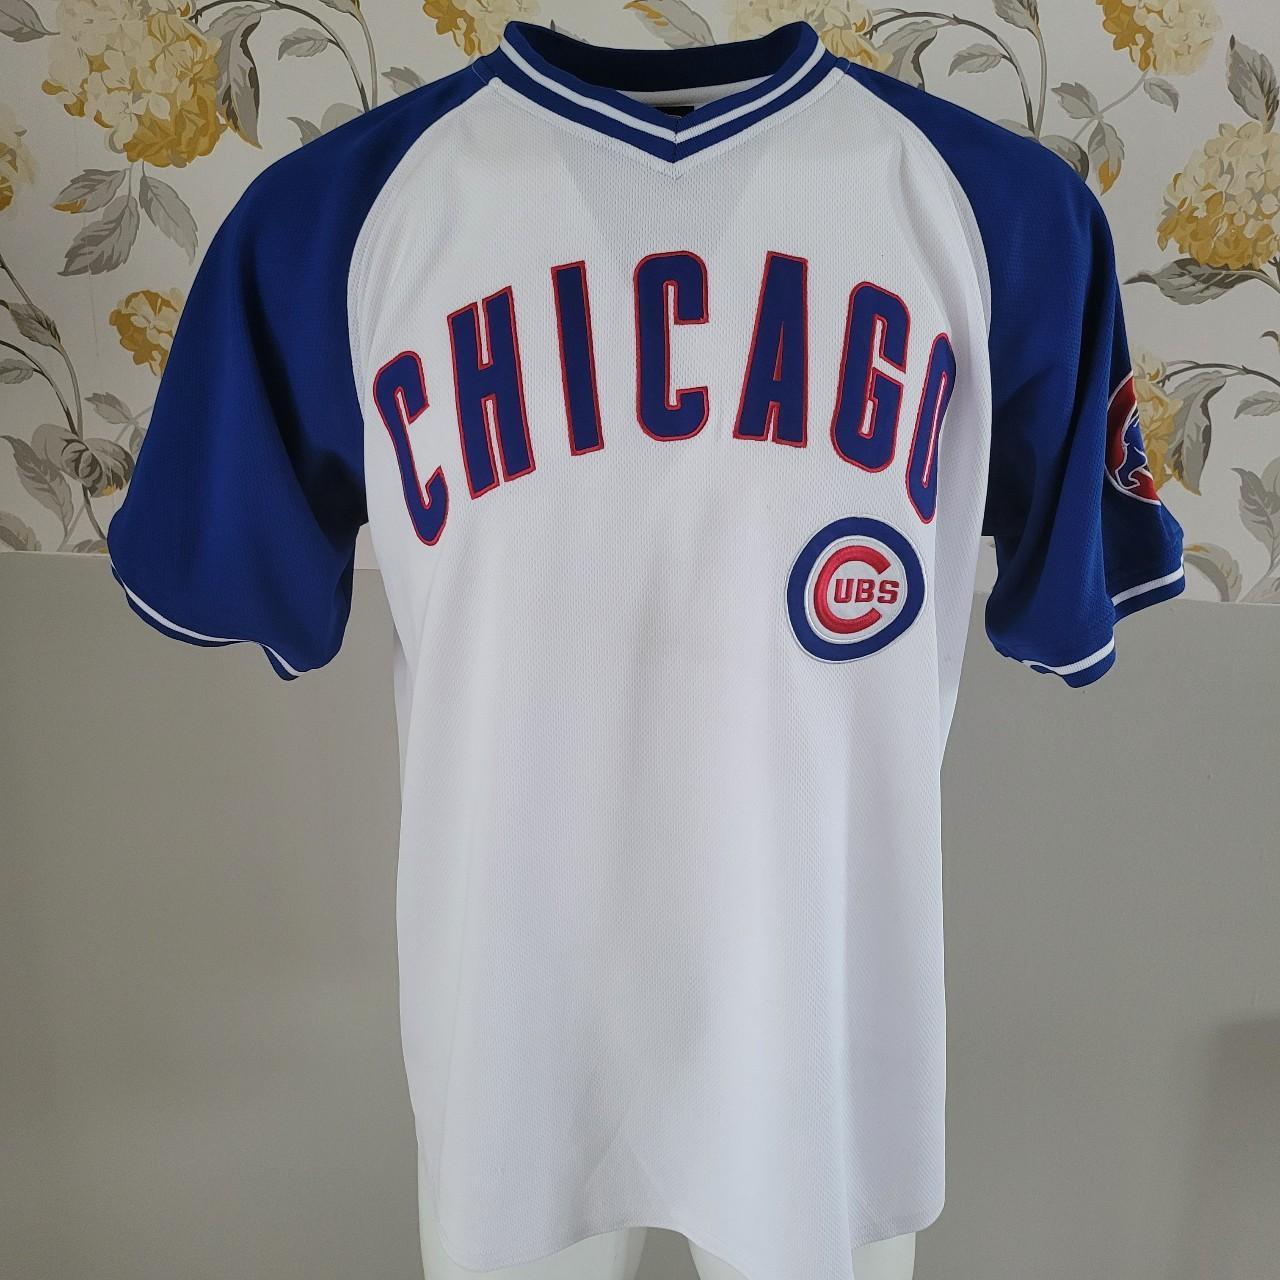 Chicago Cubs Genuine Merchandise Boys V Neck Jersey - Depop